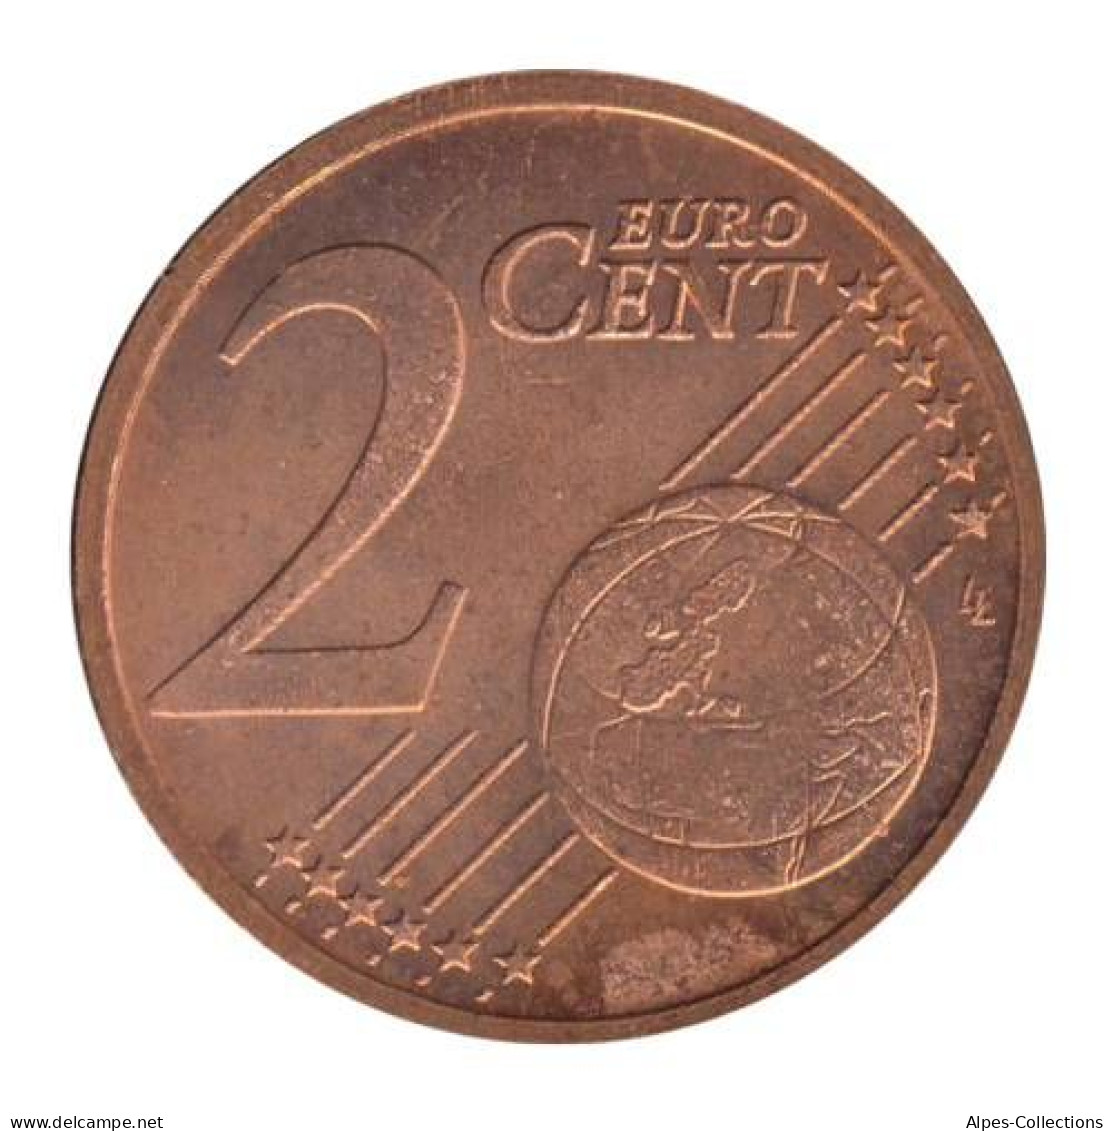 SQ00209.1 - SLOVAQUIE - 2 Cents - 2009 - Slowakije